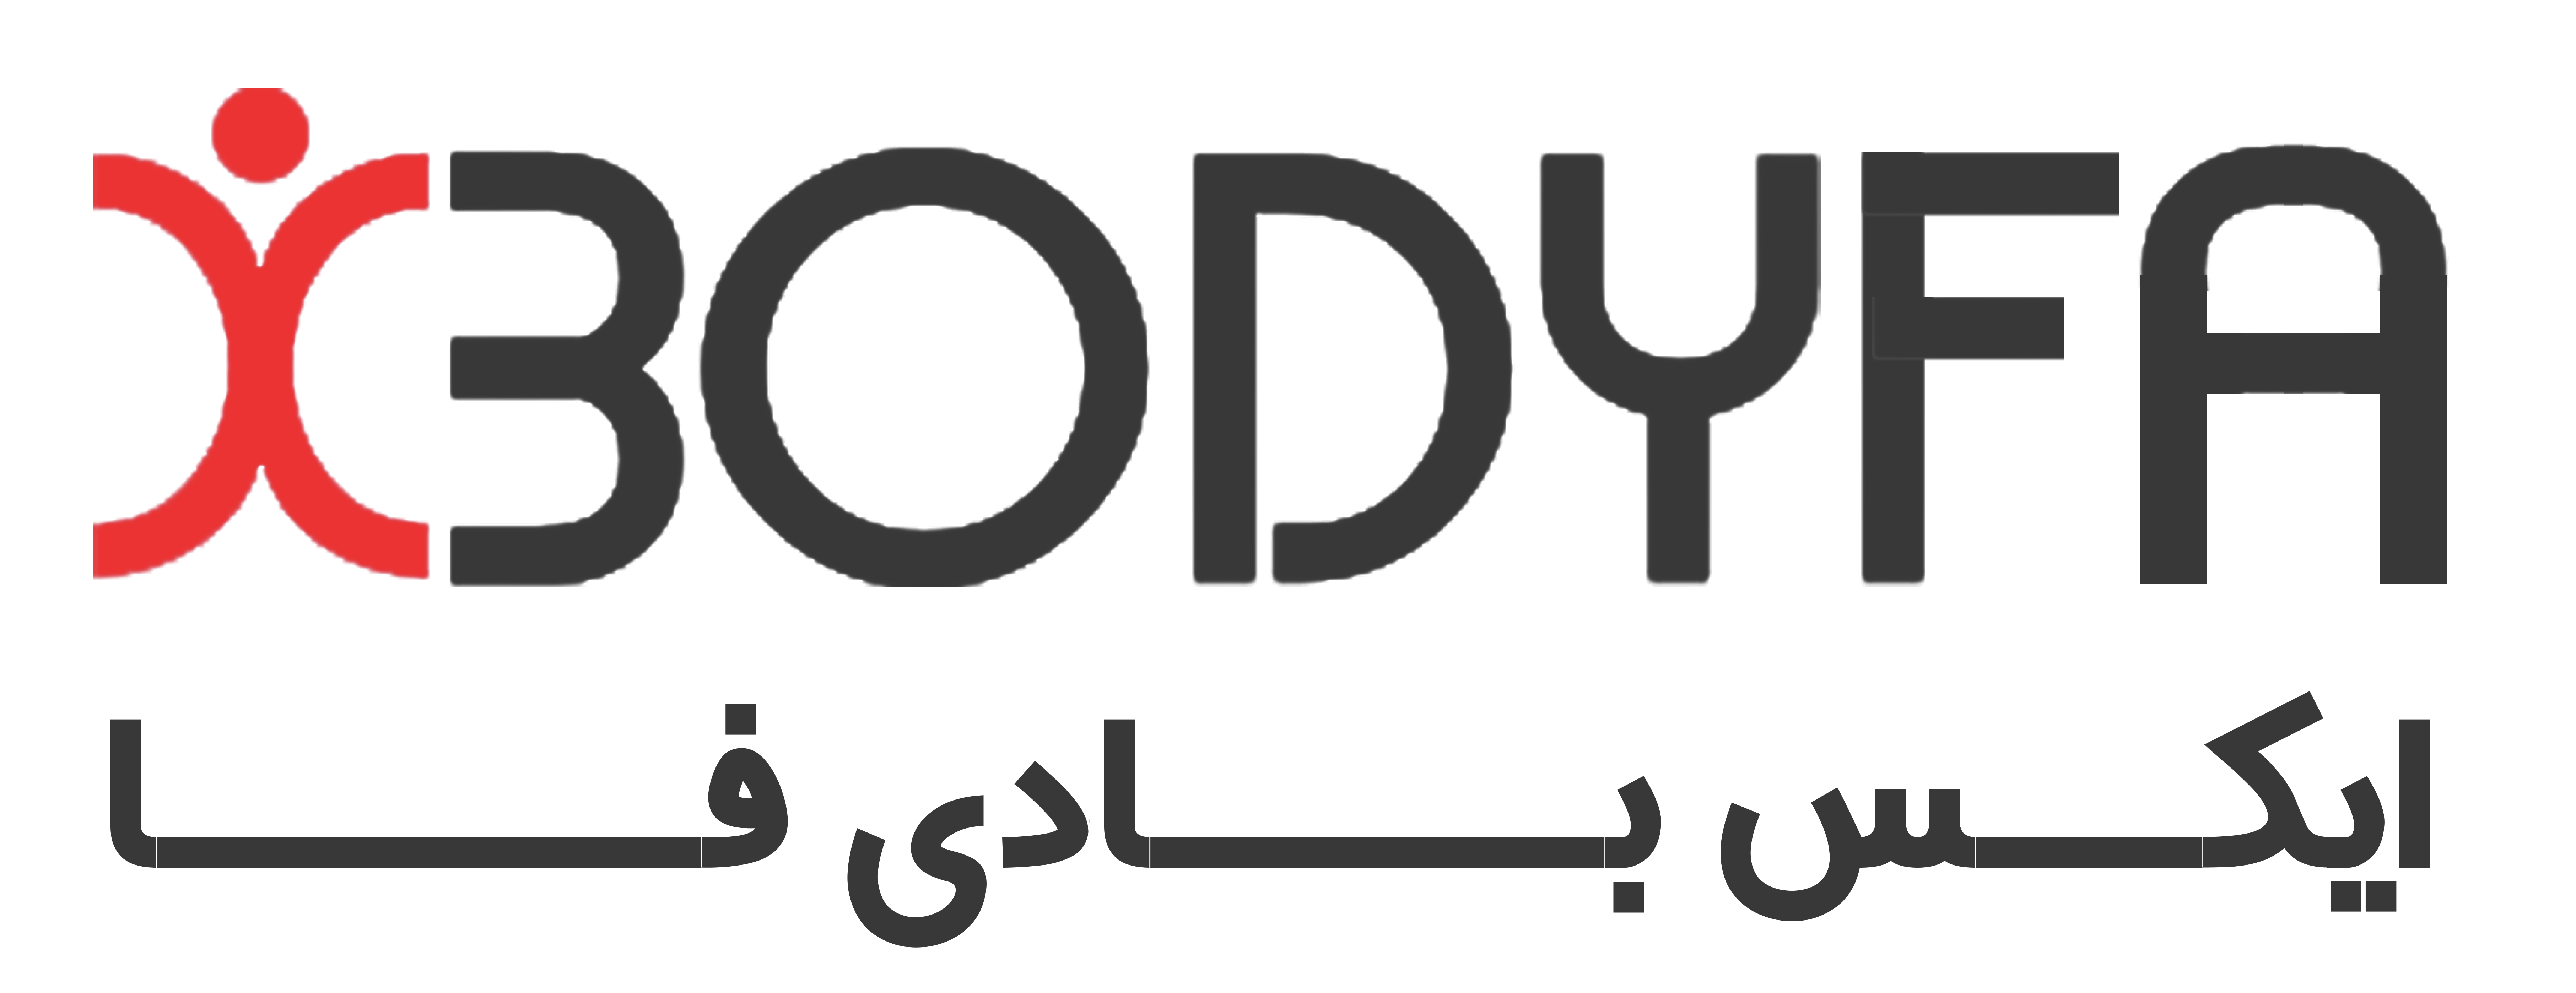 xbodyfa new logo